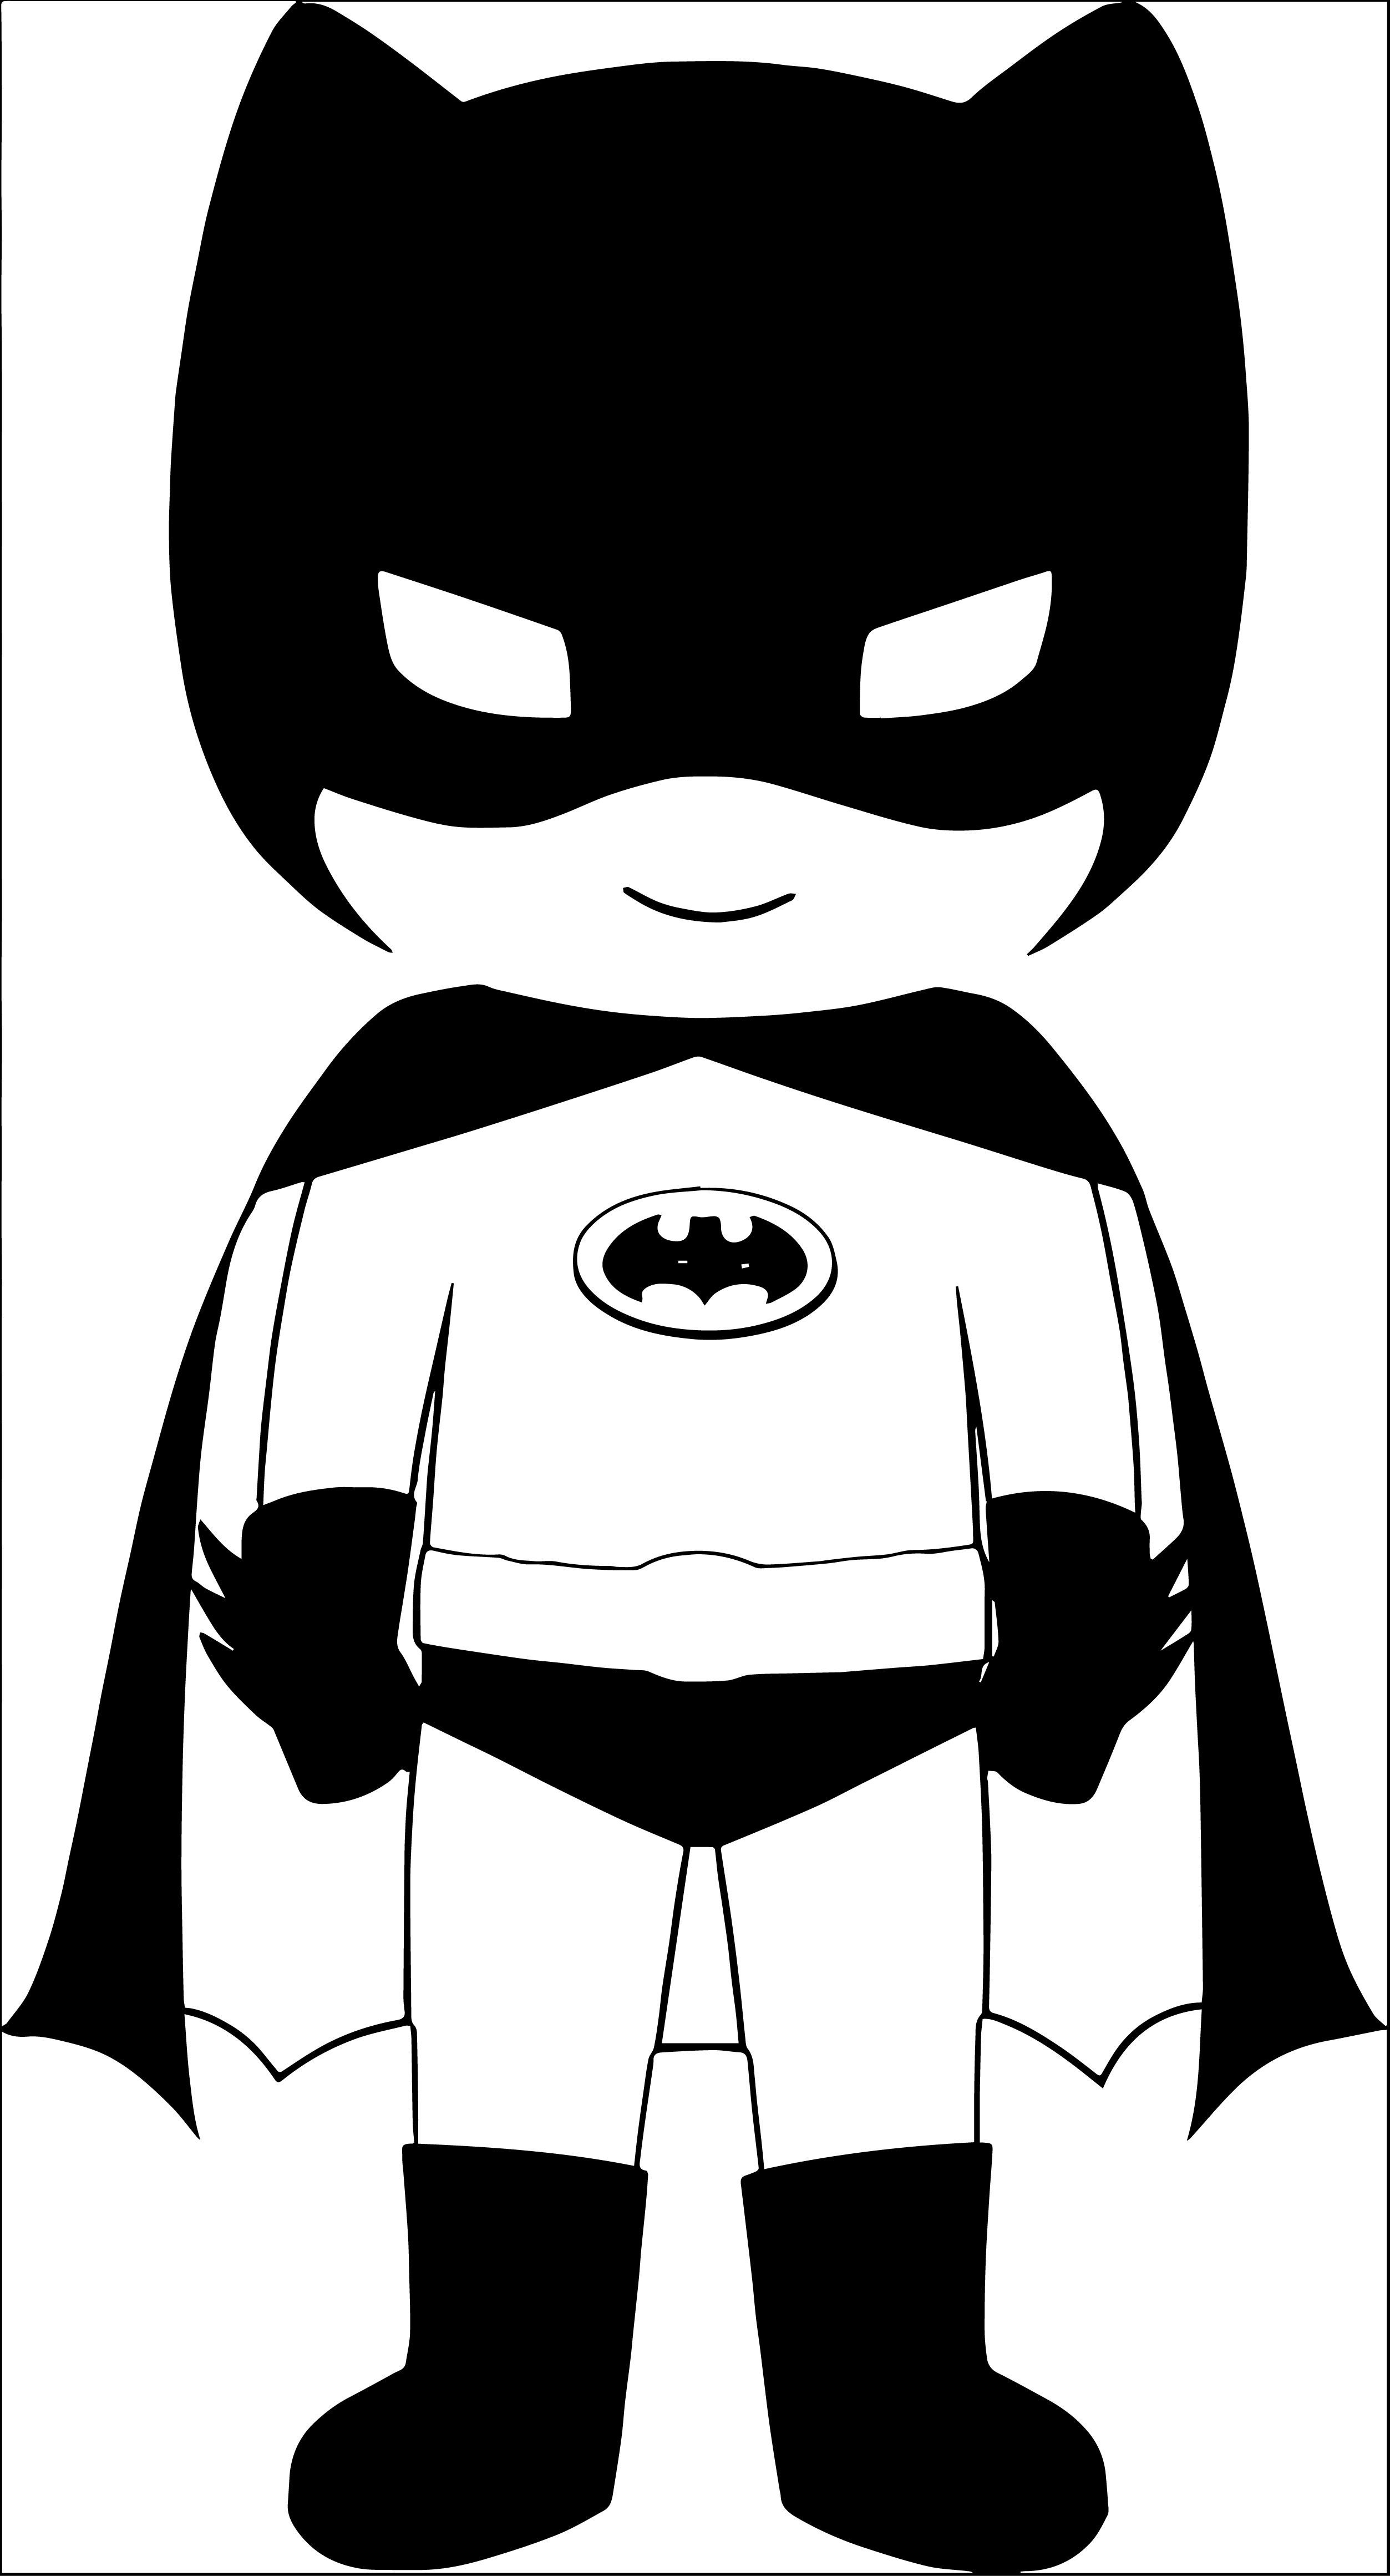 Batman clipart black and white. As soon 